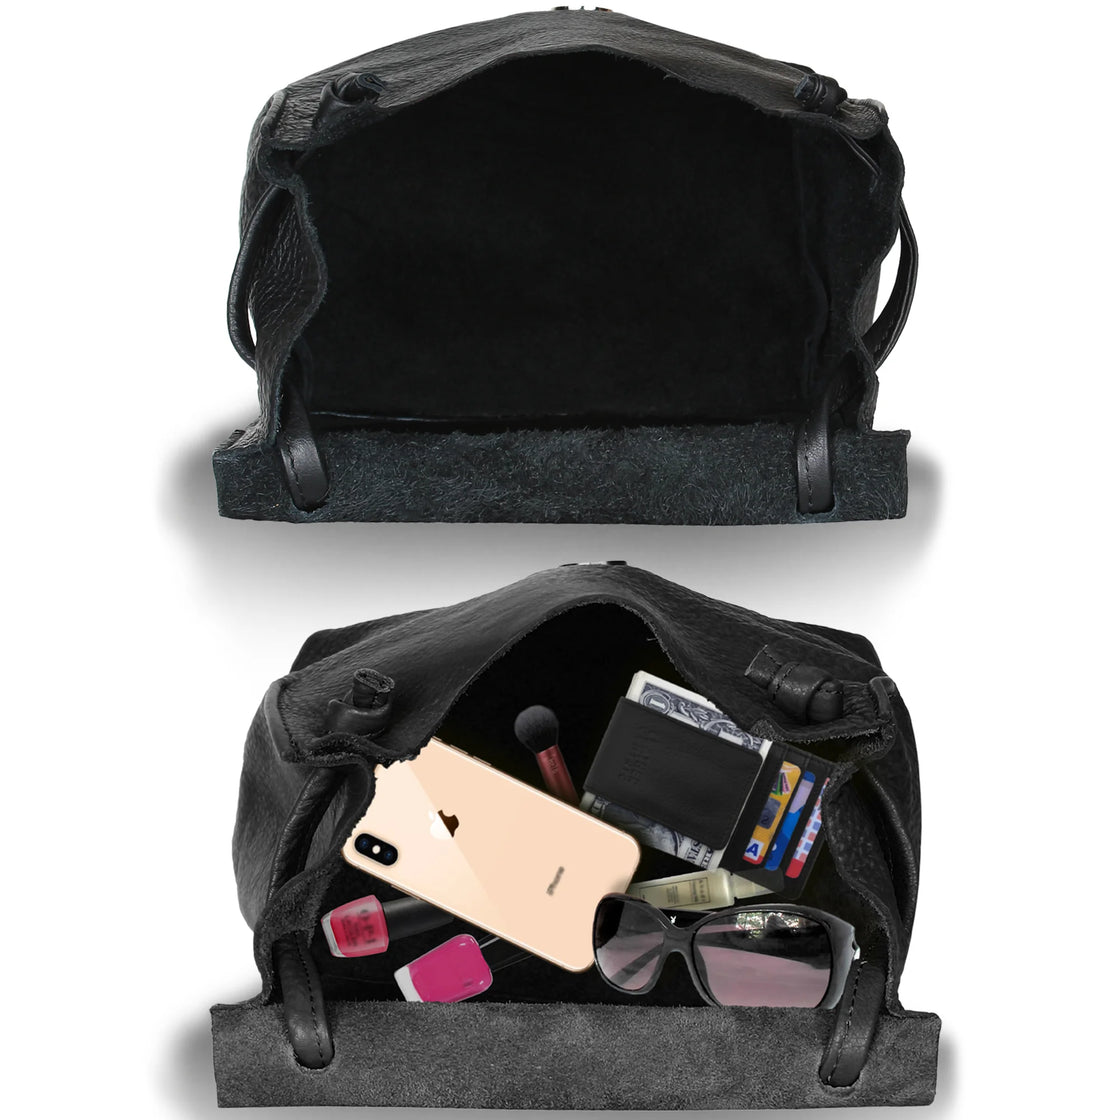 Fringed boho leather handbag, gypsy style bag – Thunder Rose Leather